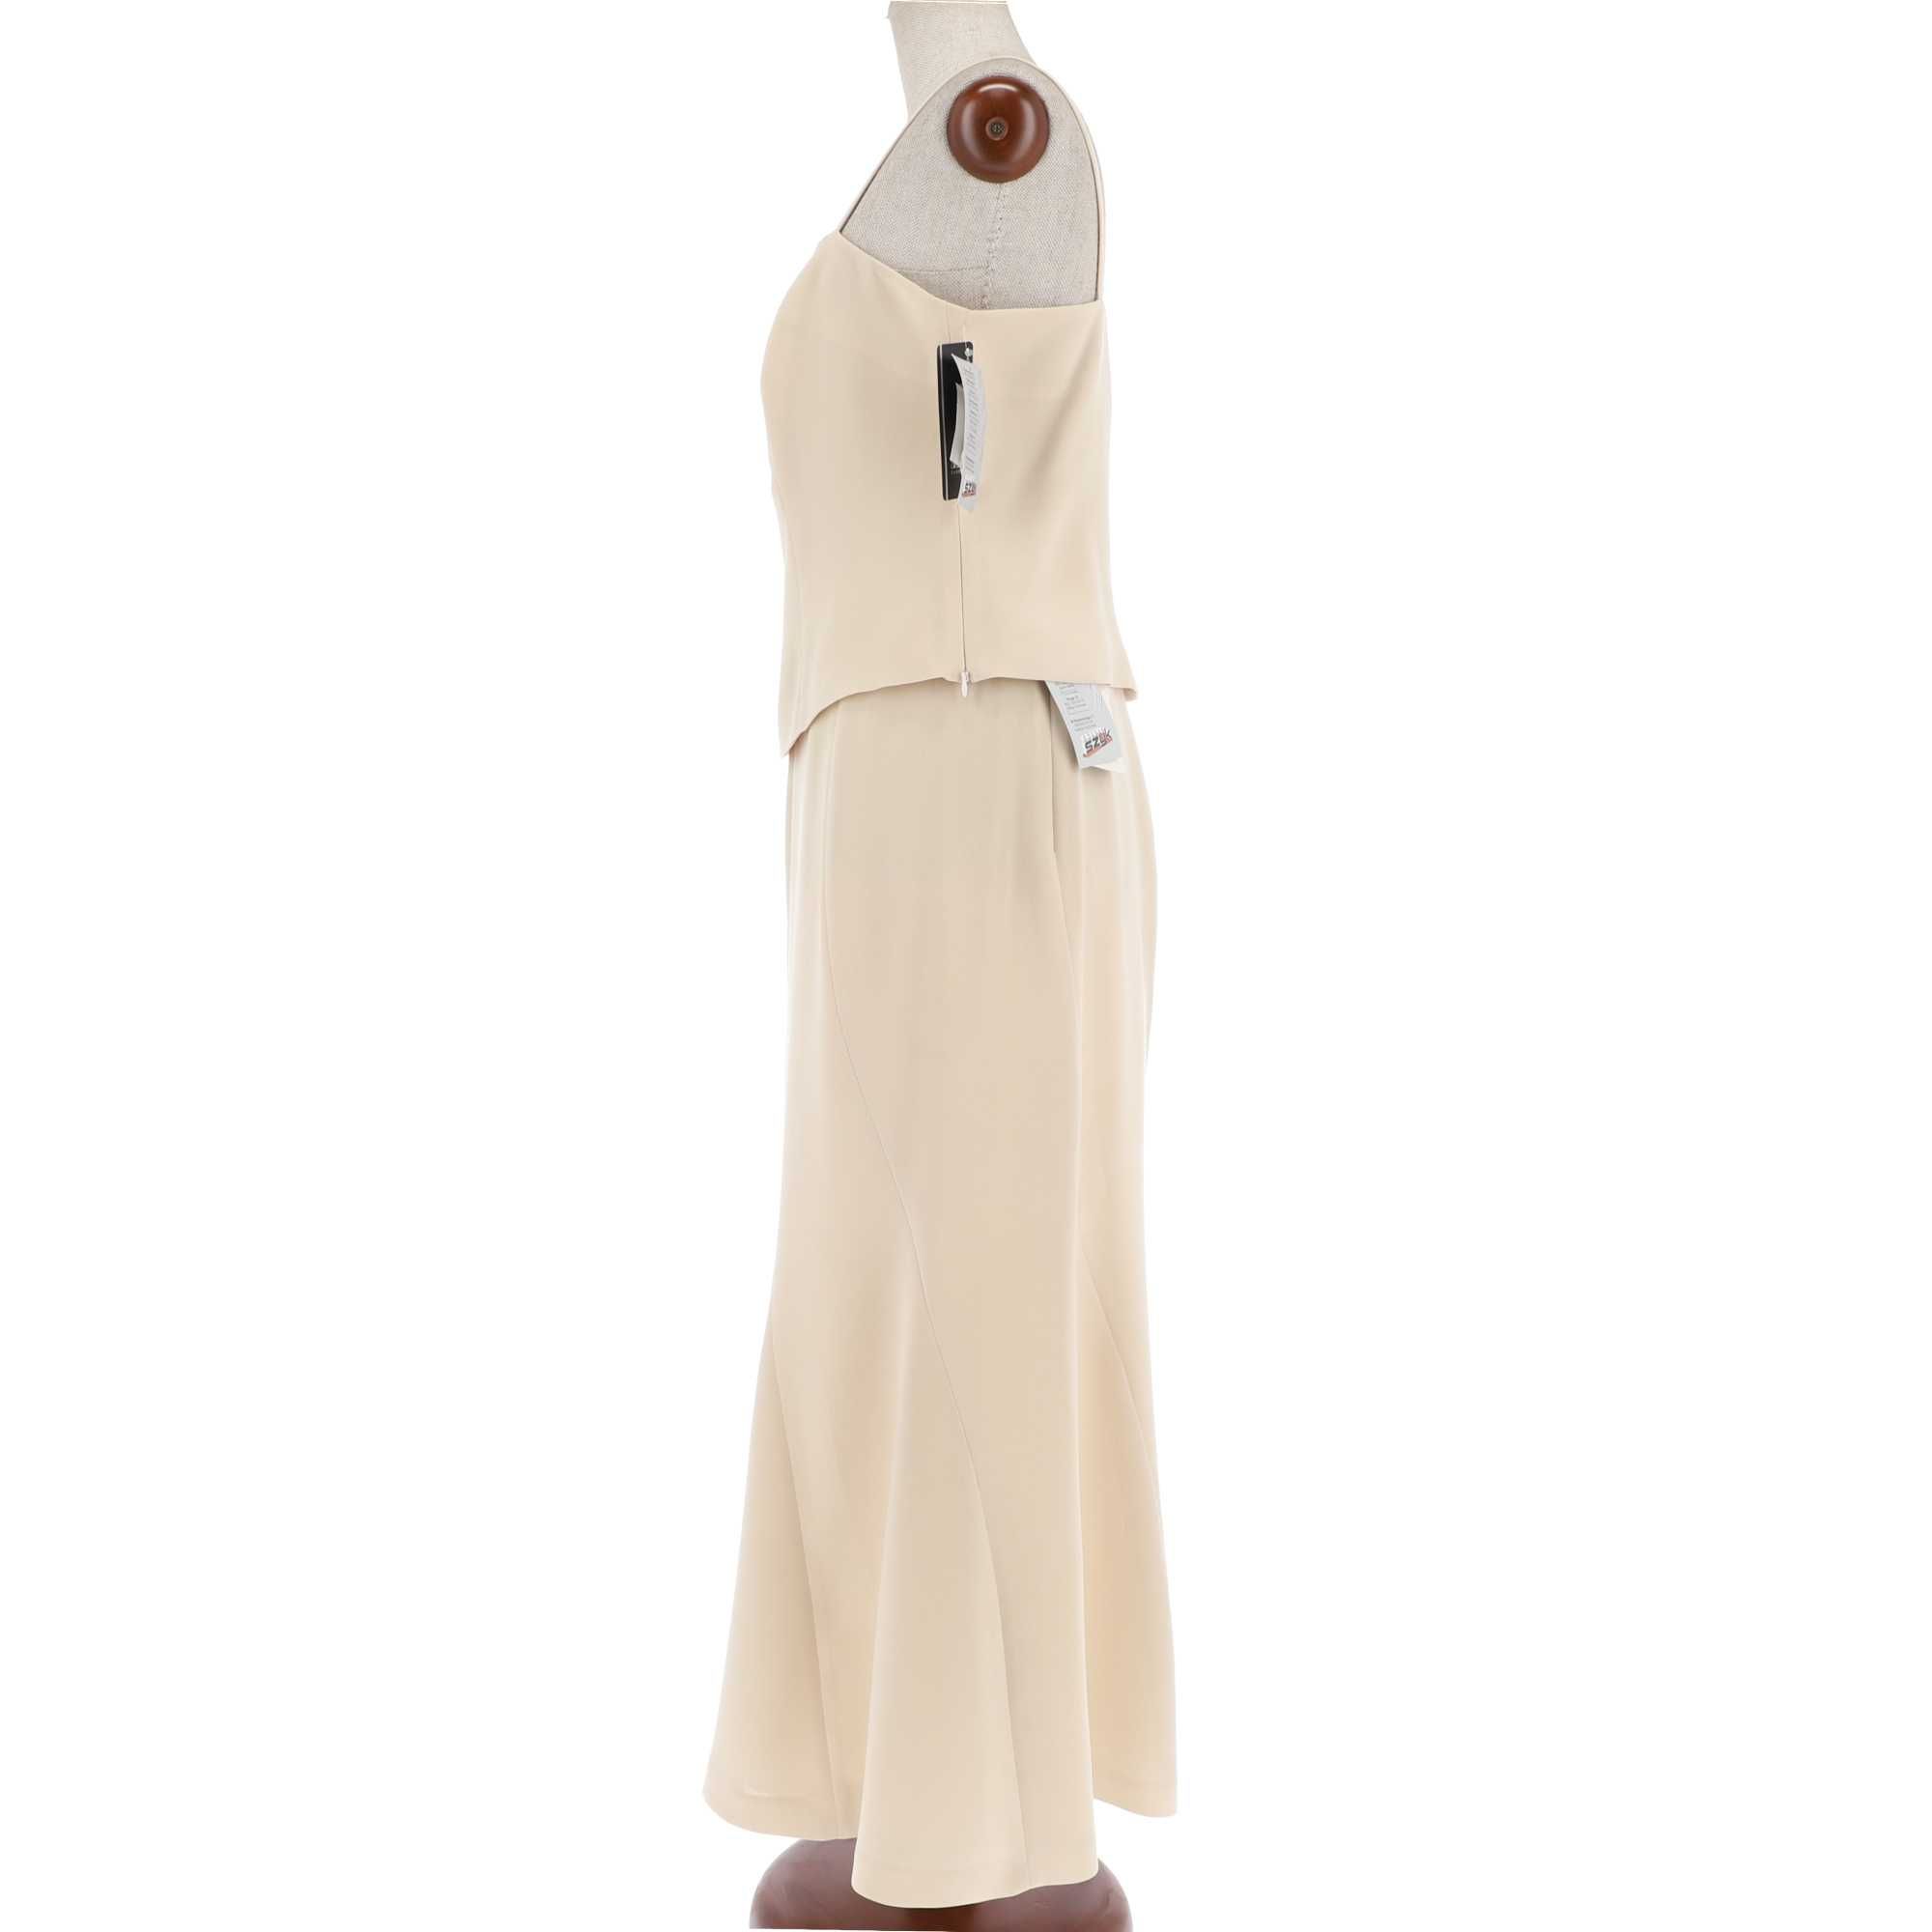 Beżowy komplet bluzki i spódnicy marki GaPa Fashion, rozmiar 46